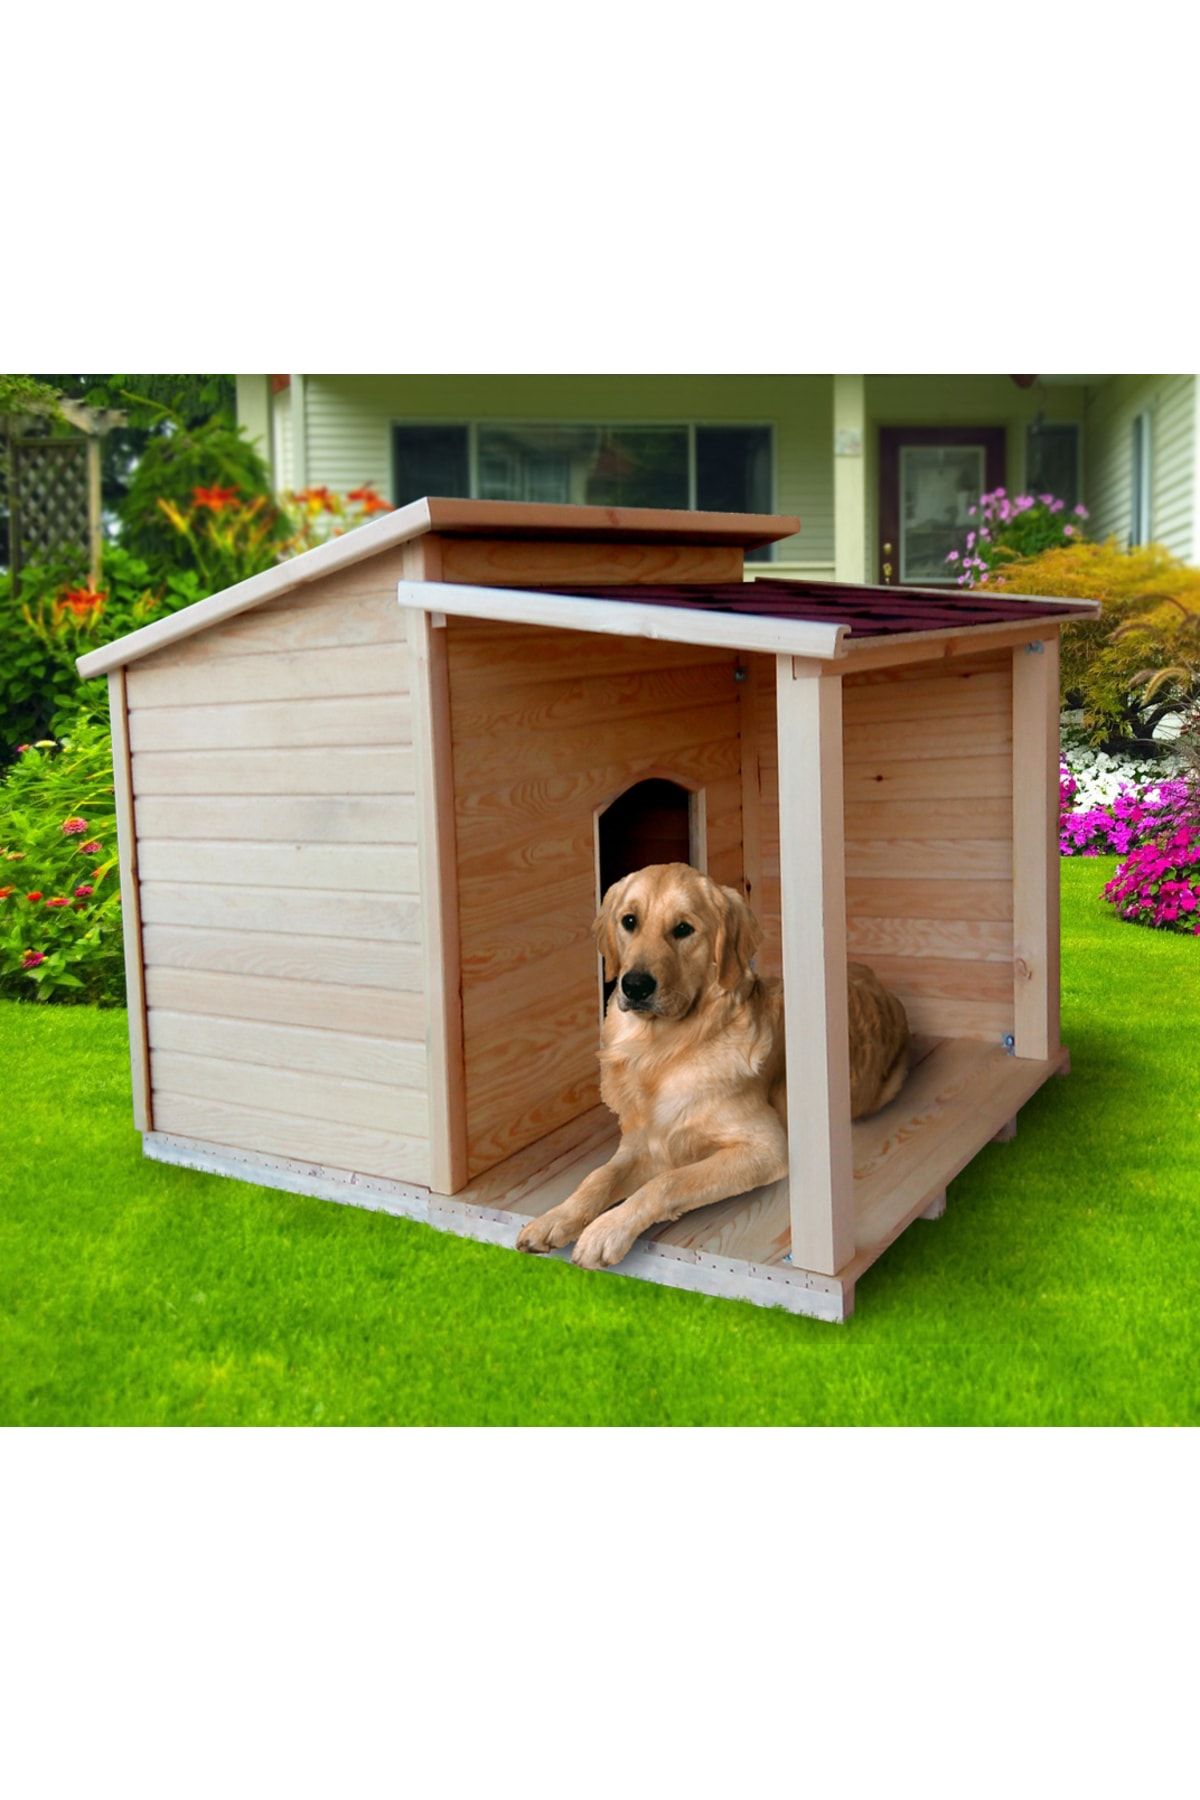 Pet дом. Будка для собаки. Собака с конурой. Красивая будка. Крутая будка для собаки.